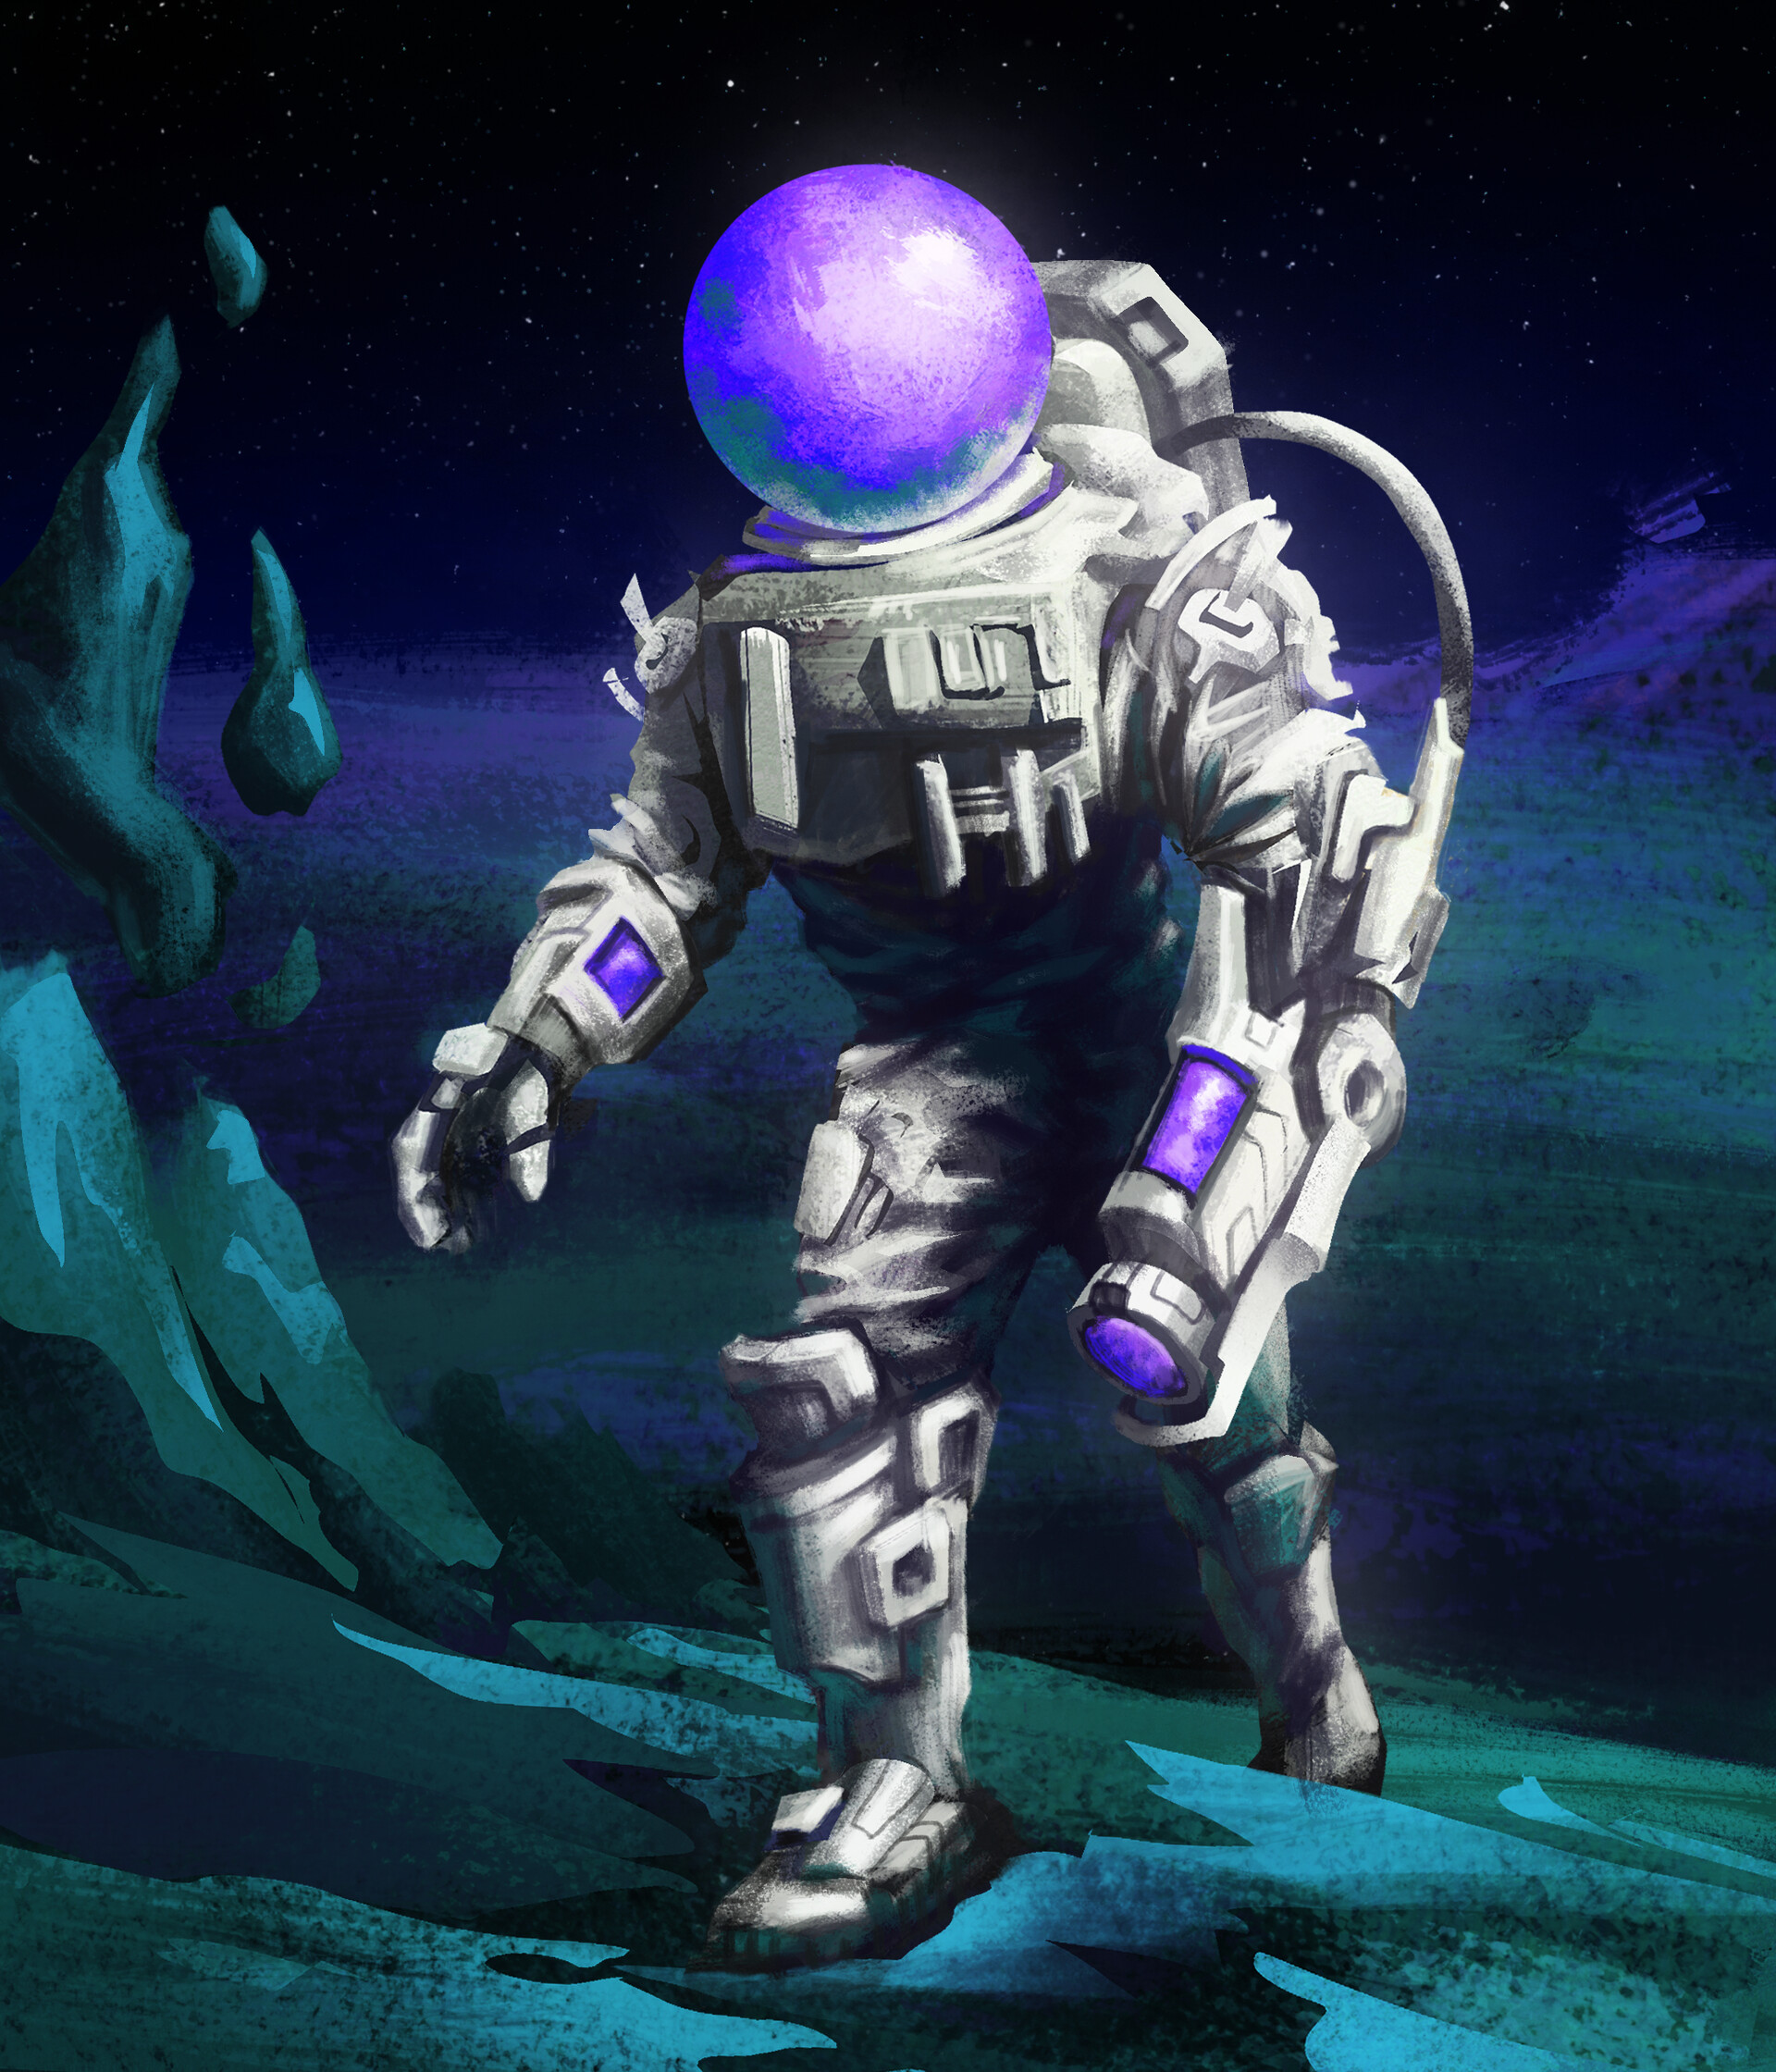 ArtStation - Astronaut